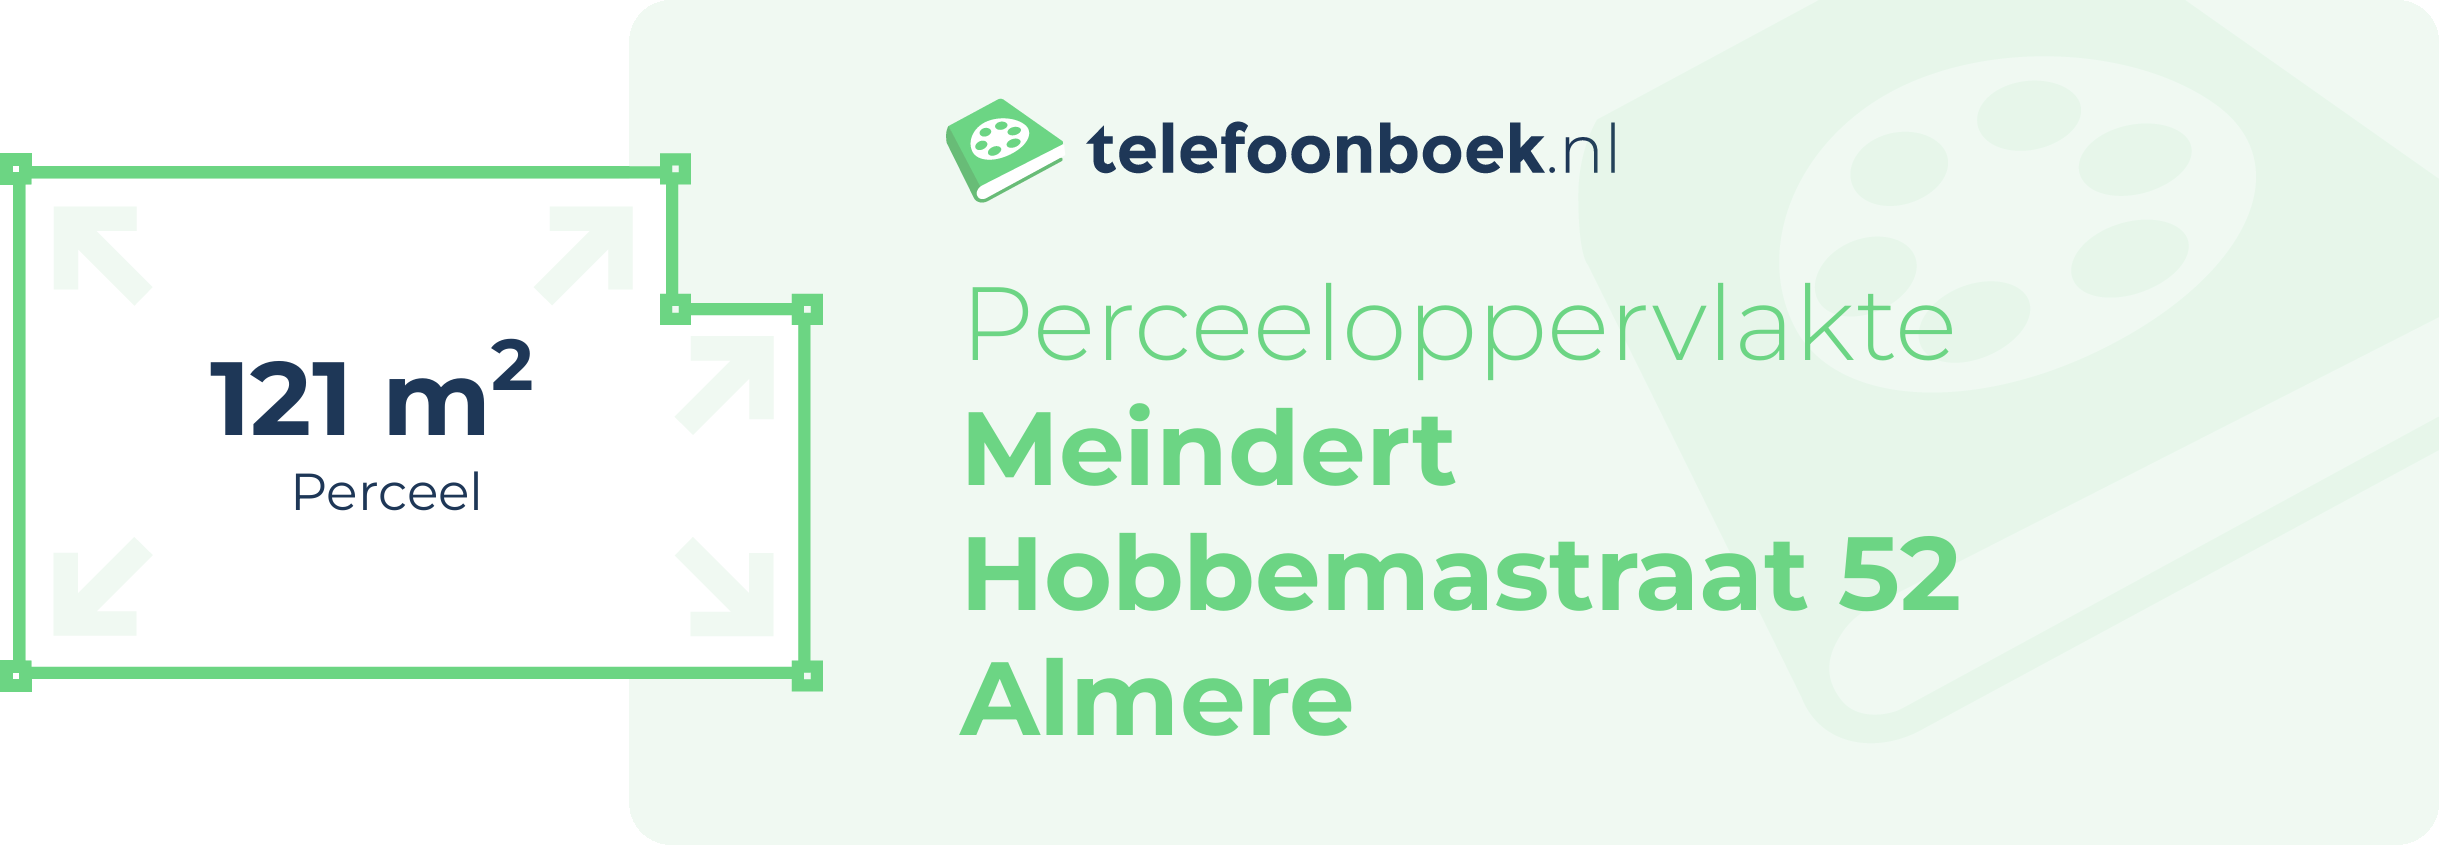 Perceeloppervlakte Meindert Hobbemastraat 52 Almere